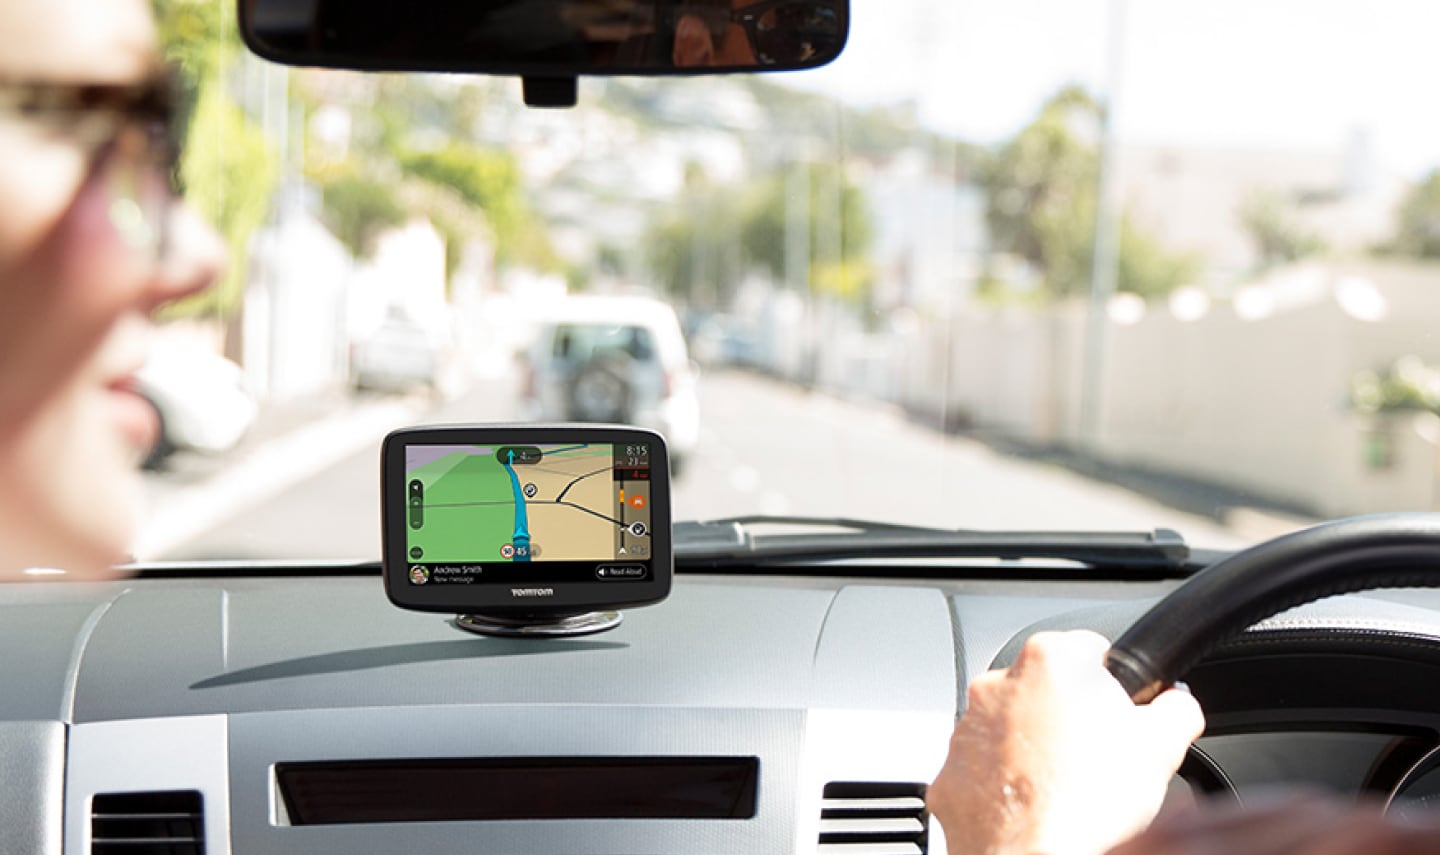 lemmer Give Studerende TomTom GPS til biler | Nyeste TomTom GO-serie til bilister